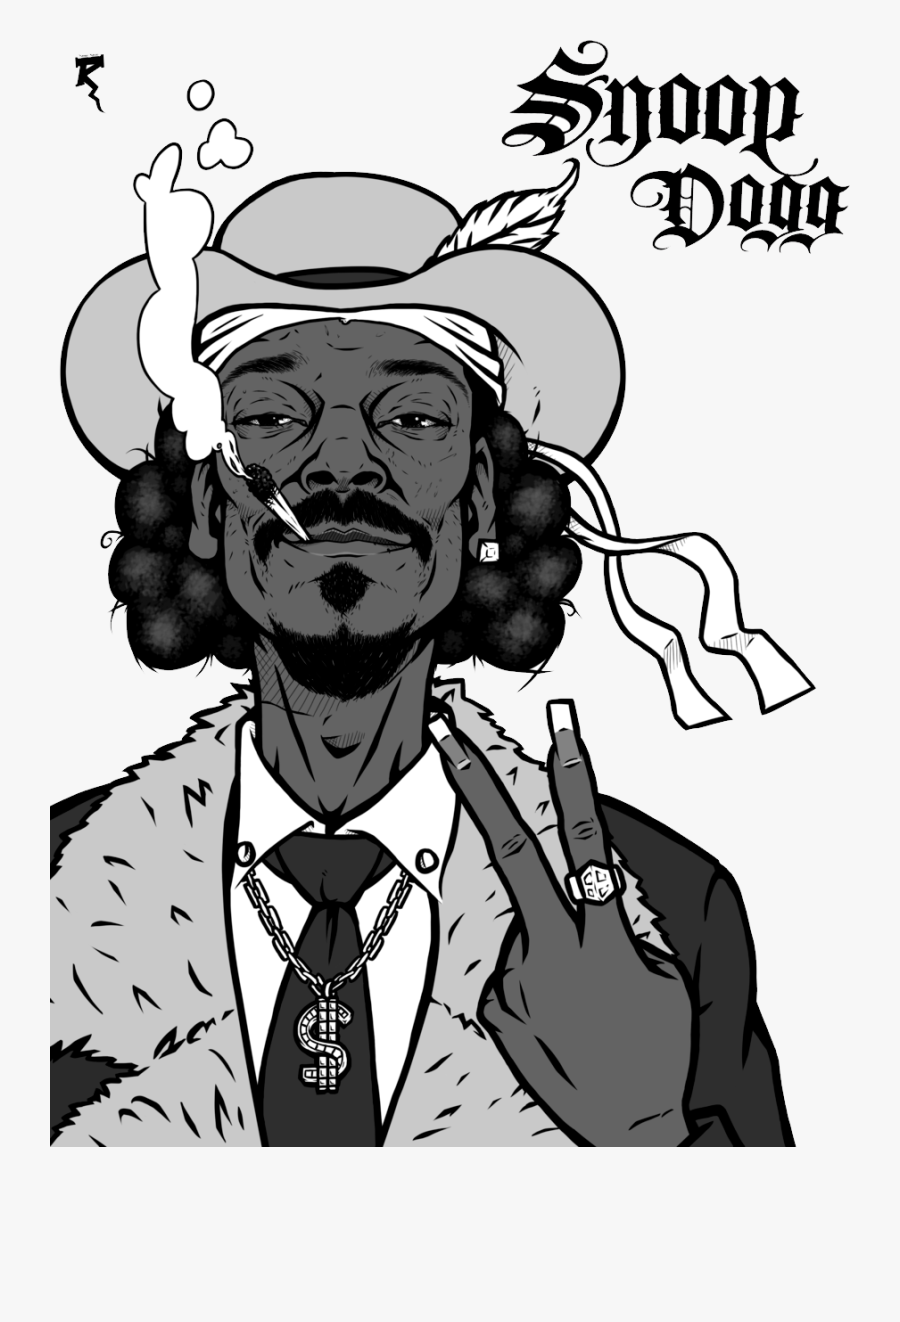 Snoop Dogg Png - Snoop Dogg Smoking Weed Cartoon, Transparent Clipart